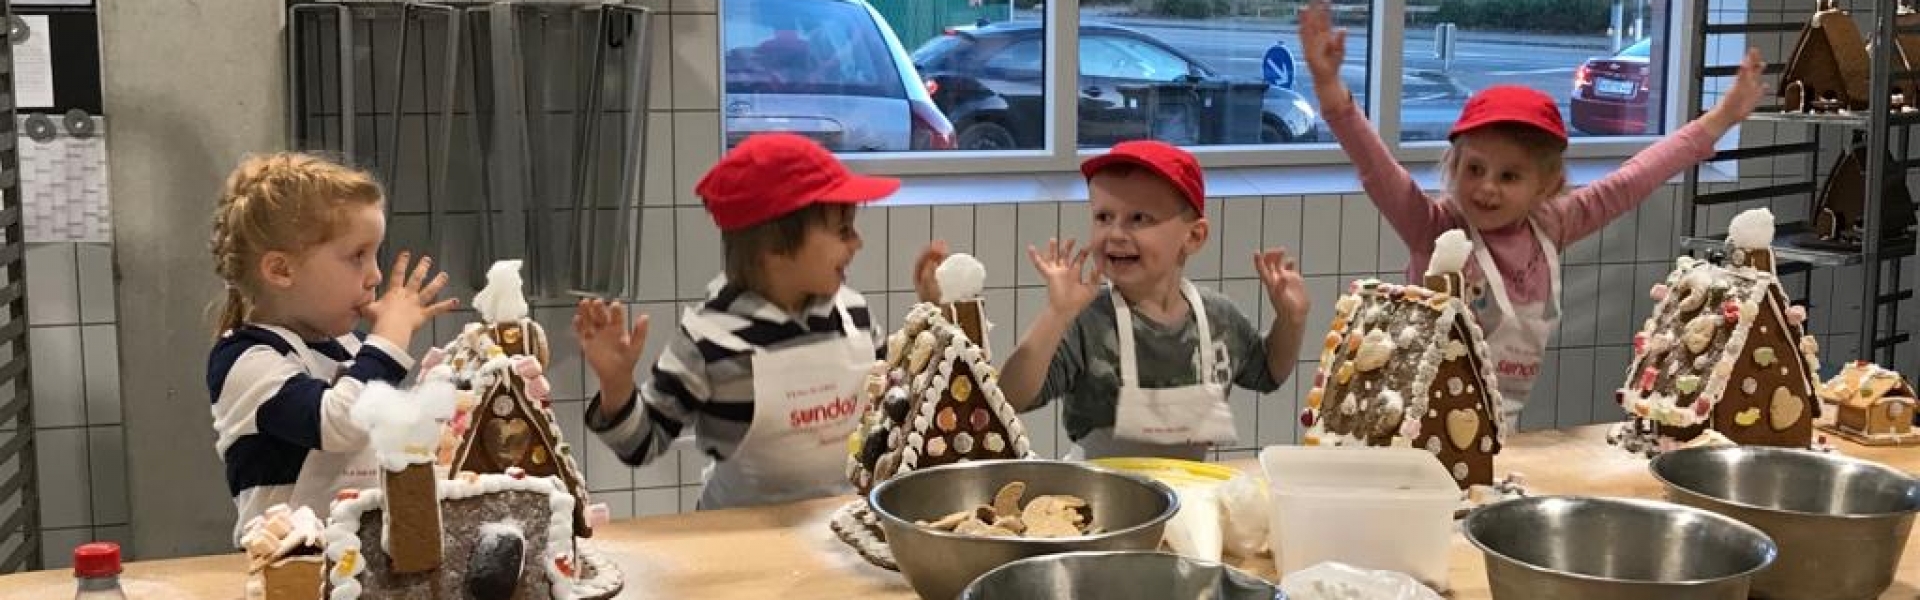 Kinderbacken und Hexenhäuschen bauen in der Weihnachtsbäckerei